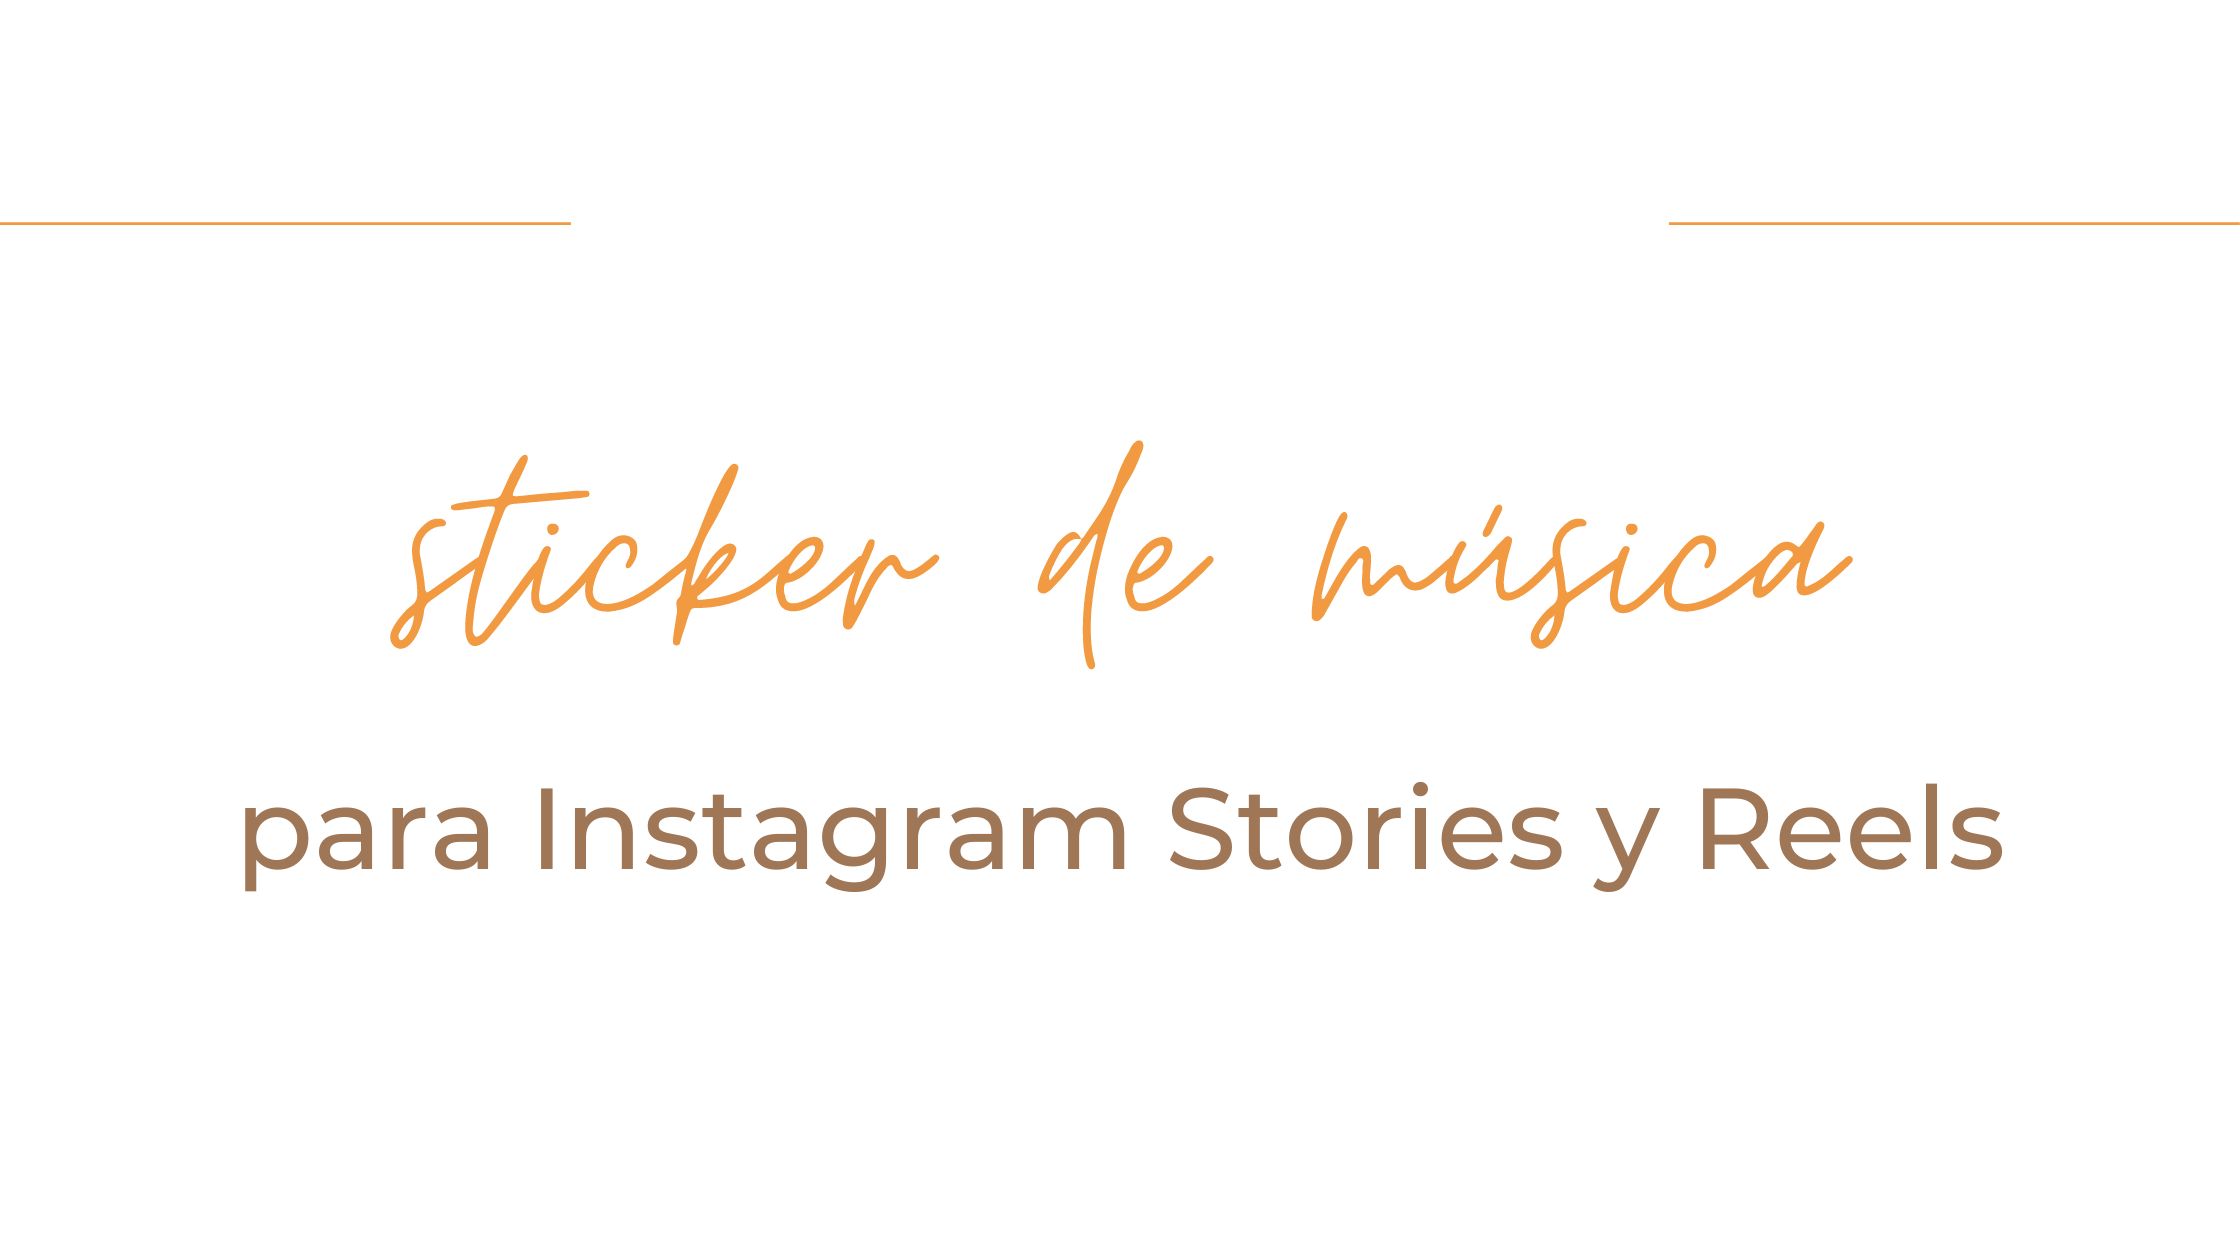 Recupera el sticker de música para Instagram Stories y Reels